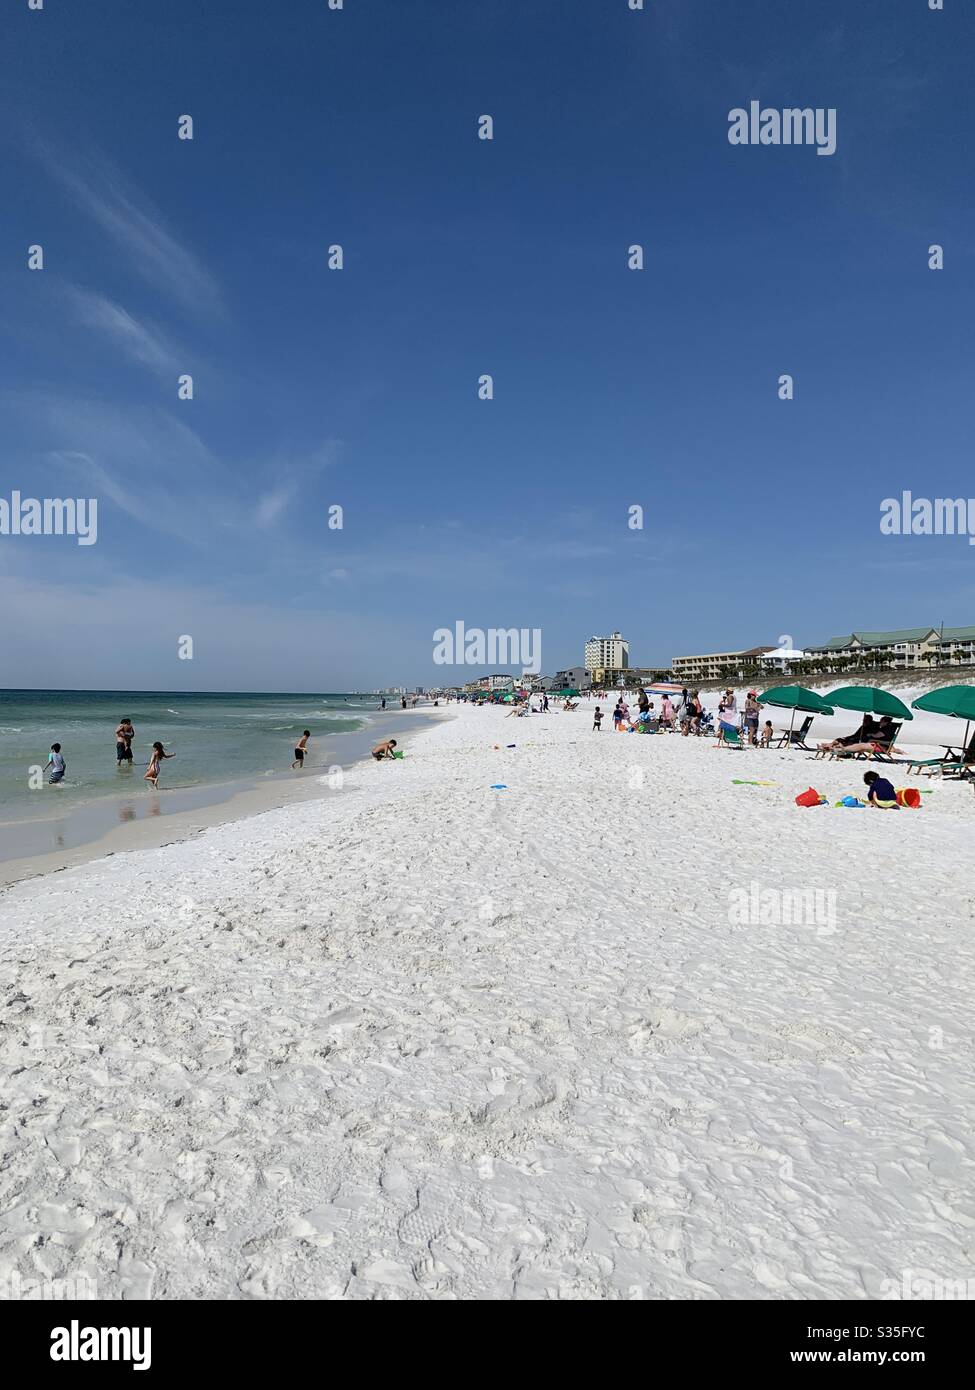 Contraste de la pause de printemps sur Destin, Florida Beach Mars 2019. Des groupes de personnes se sont réunis pour profiter de la plage et des plages fermées en mars 2020 en raison de l'éclosion de coronavirus Banque D'Images